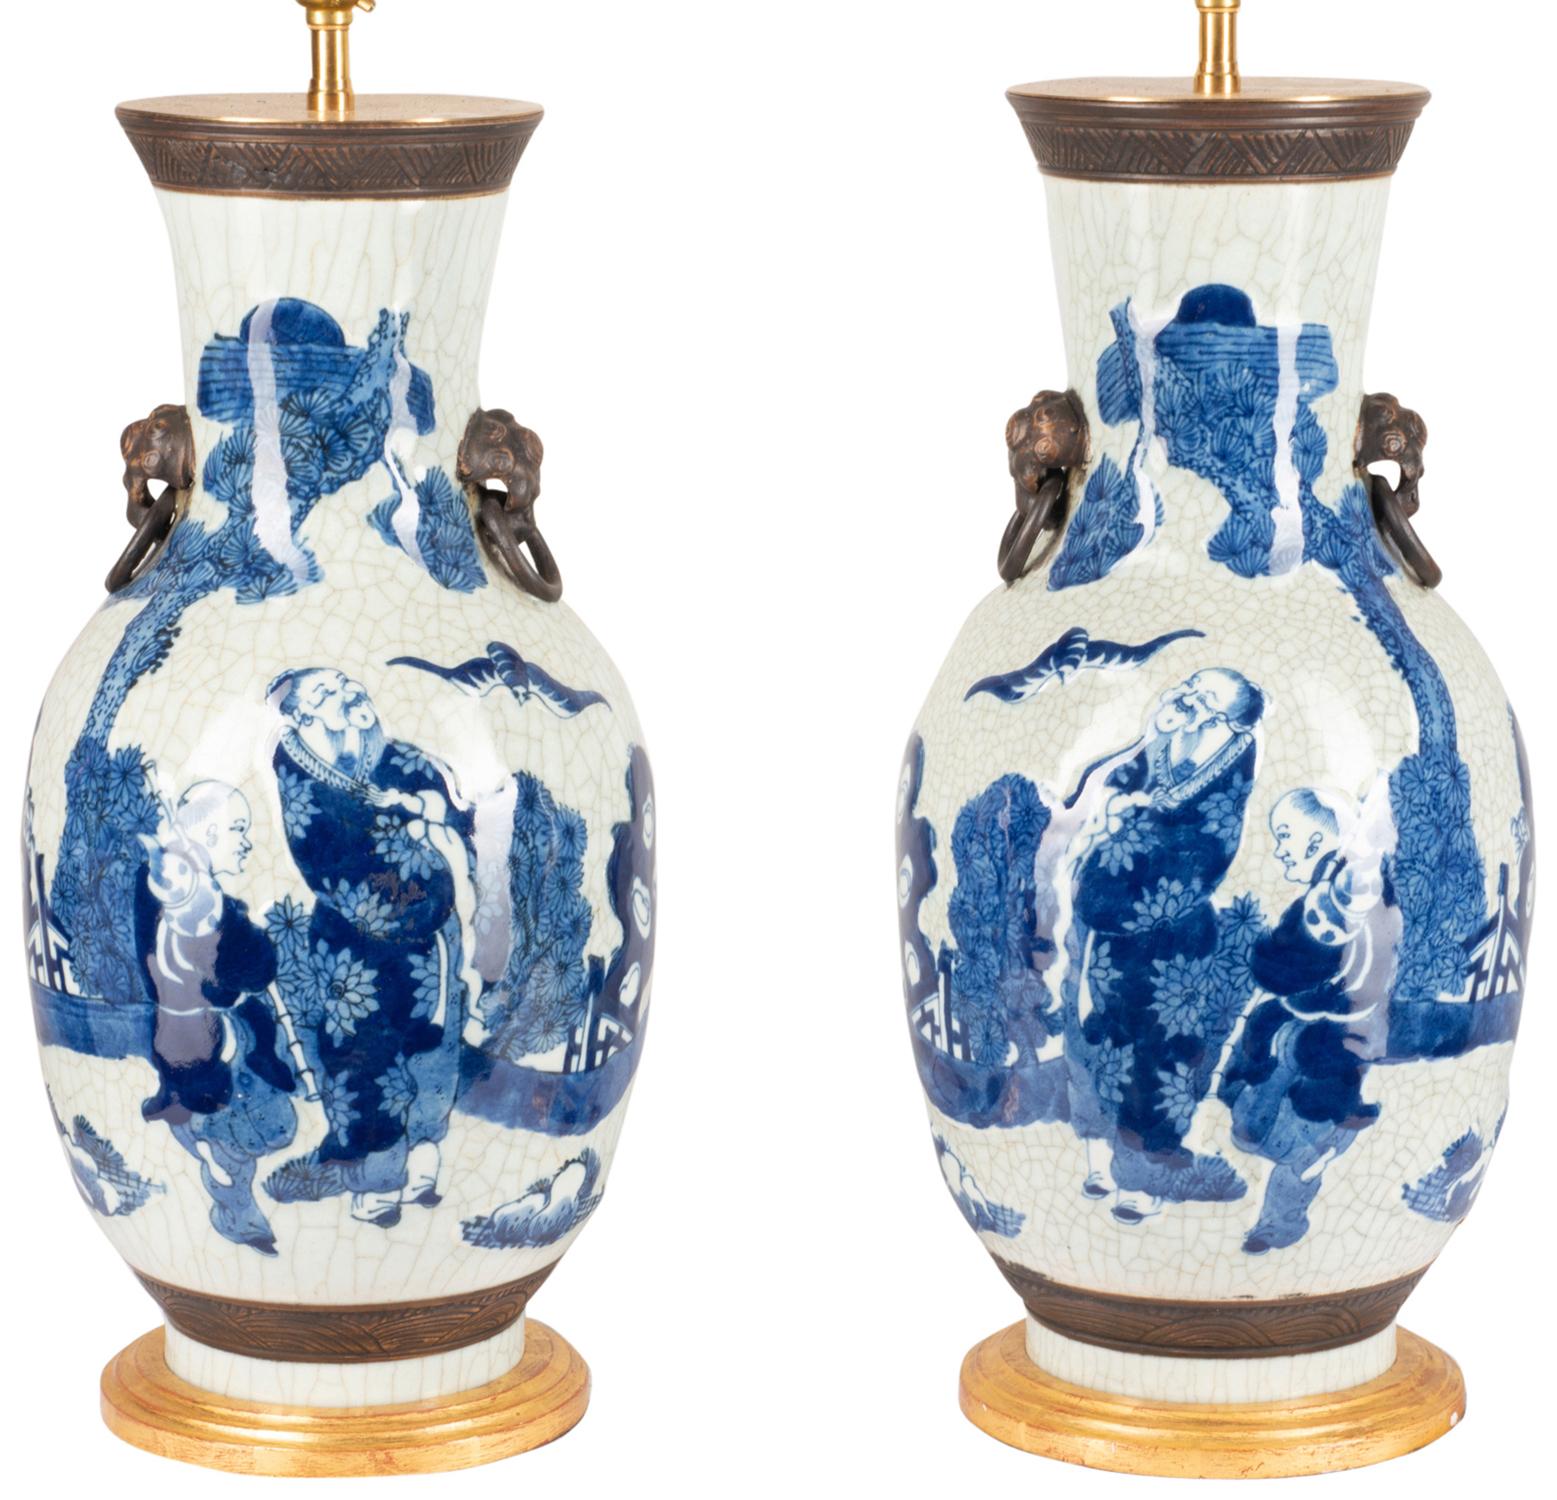 Paire de vases/lampe de bonne qualité en porcelaine bleue et blanche, chacun avec des figures orientales regardant des chauves-souris volant dans le ciel.
Montés sur des bases sculptées et dorées.